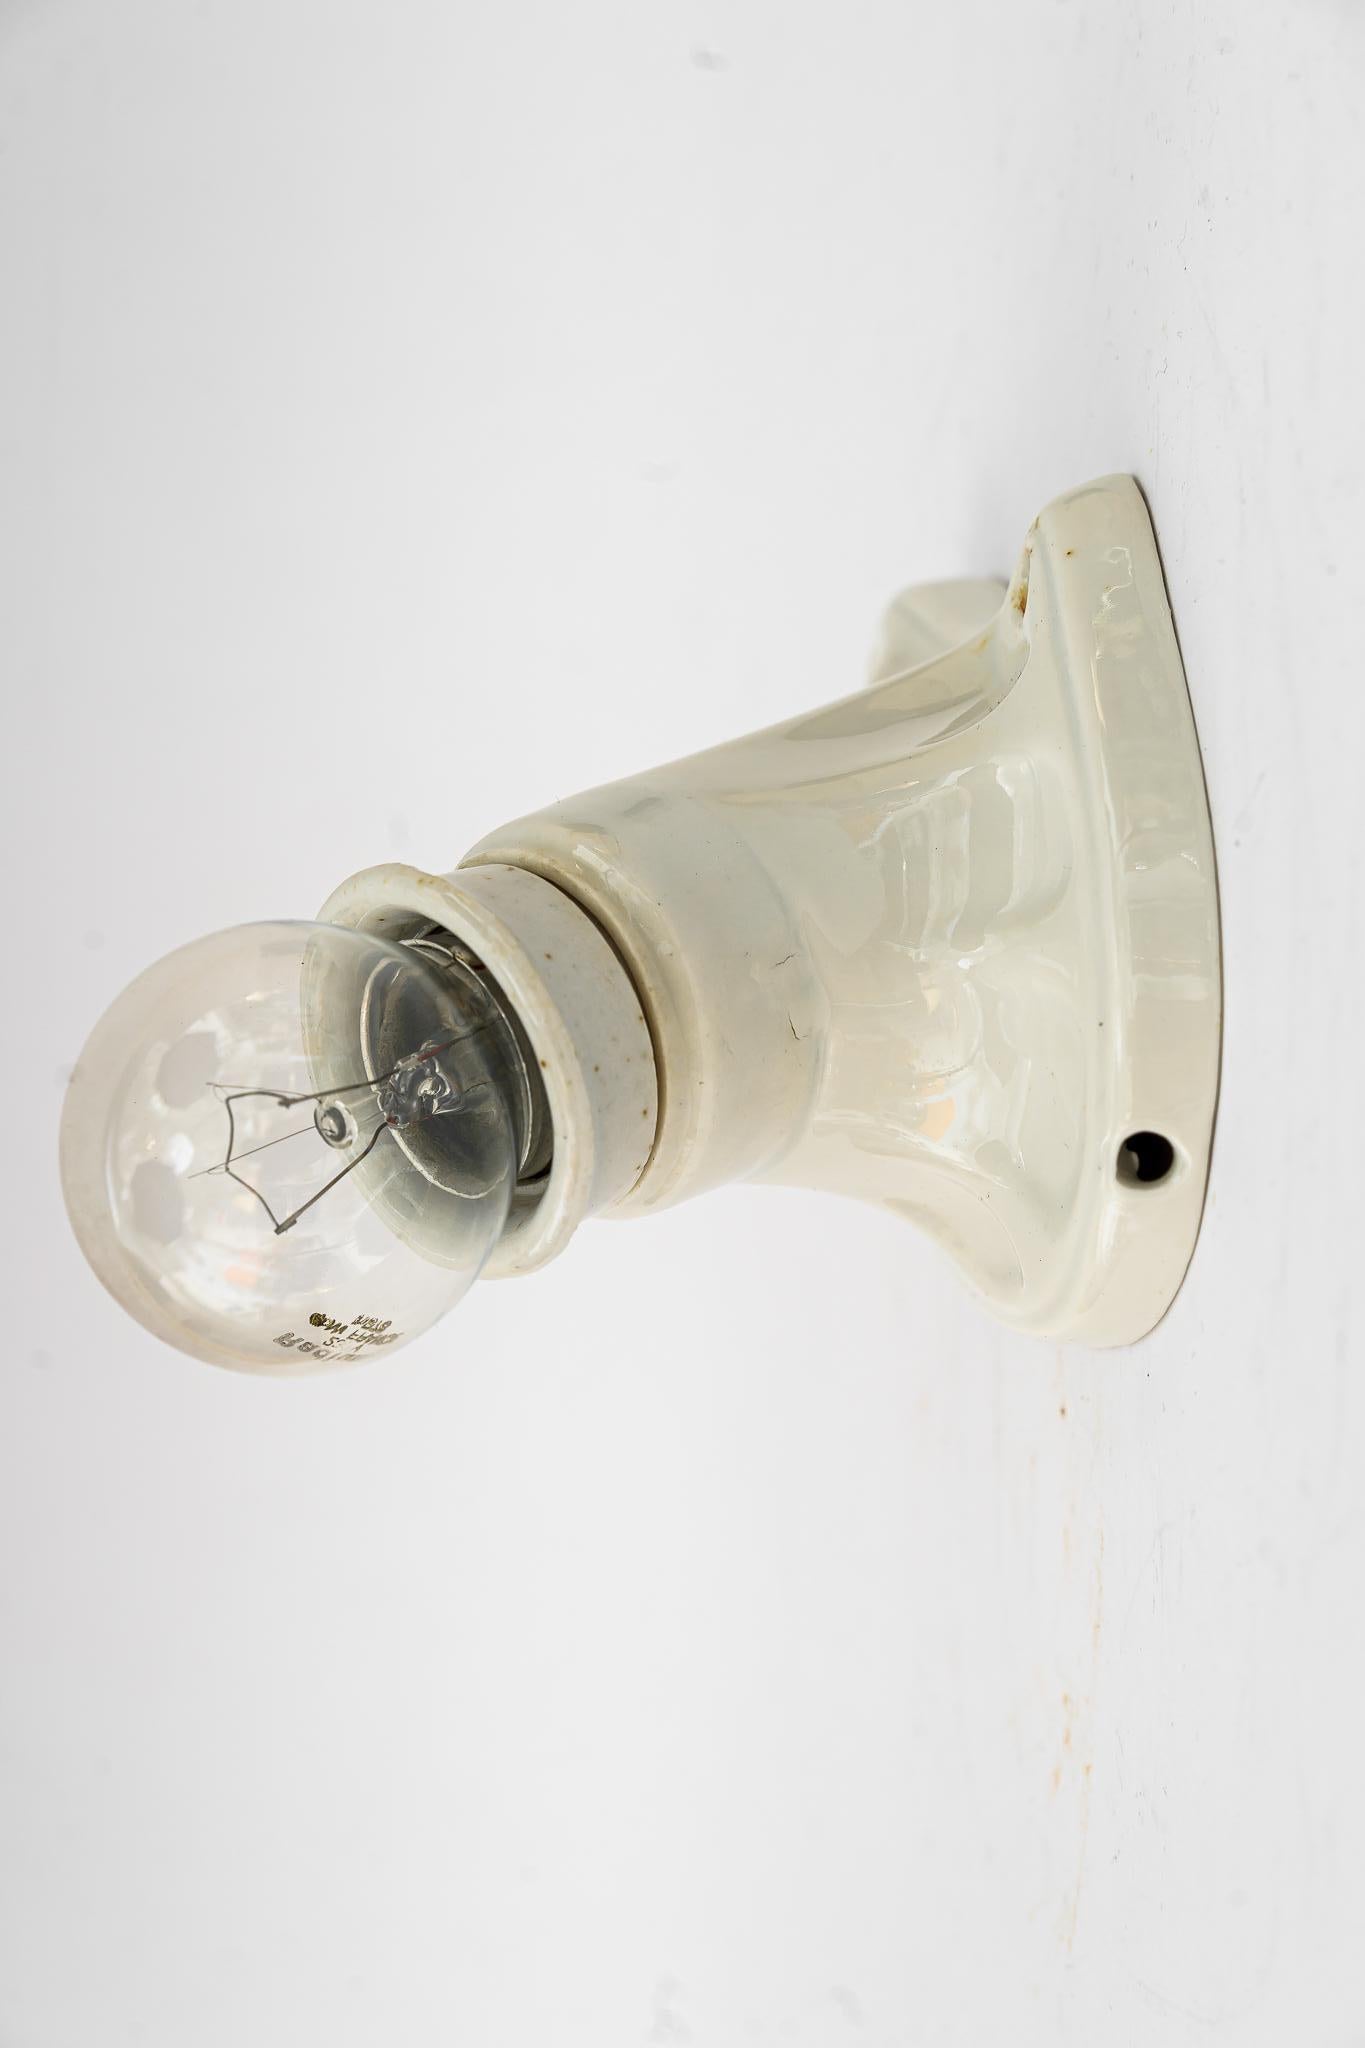 Kleine Bauhaus Keramik Wandlampe Wien um 1920er Jahre
Die Glühbirne ist nicht im Lieferumfang enthalten.
Ursprünglicher Zustand.